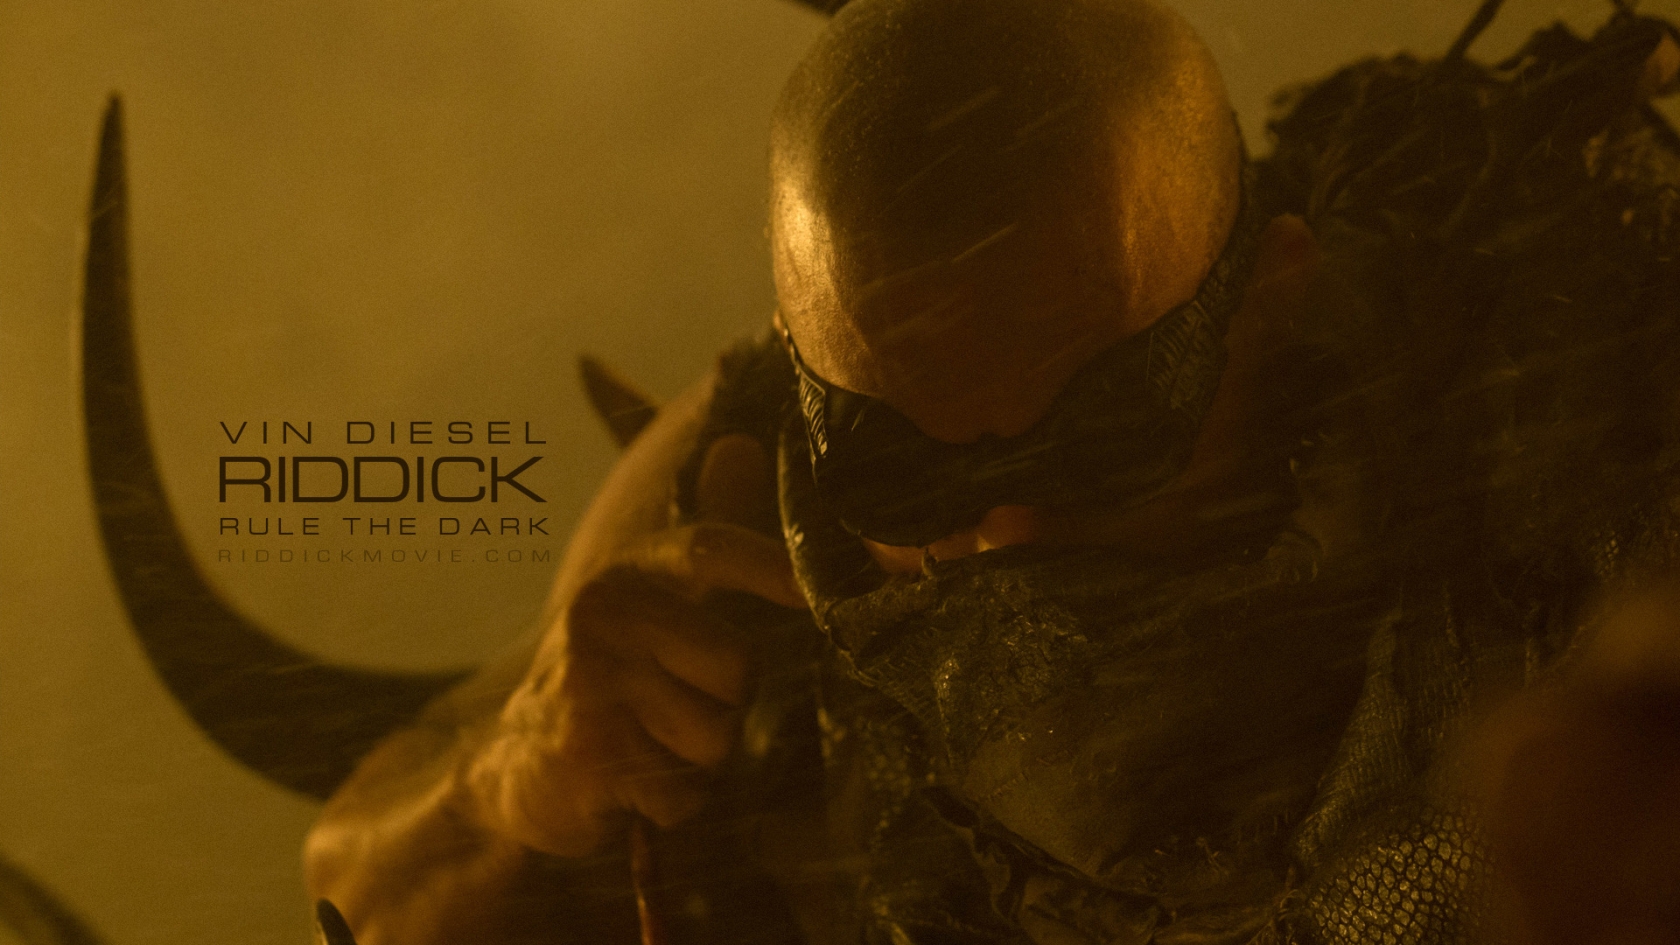 Vin Diesel Riddick for 1680 x 945 HDTV resolution